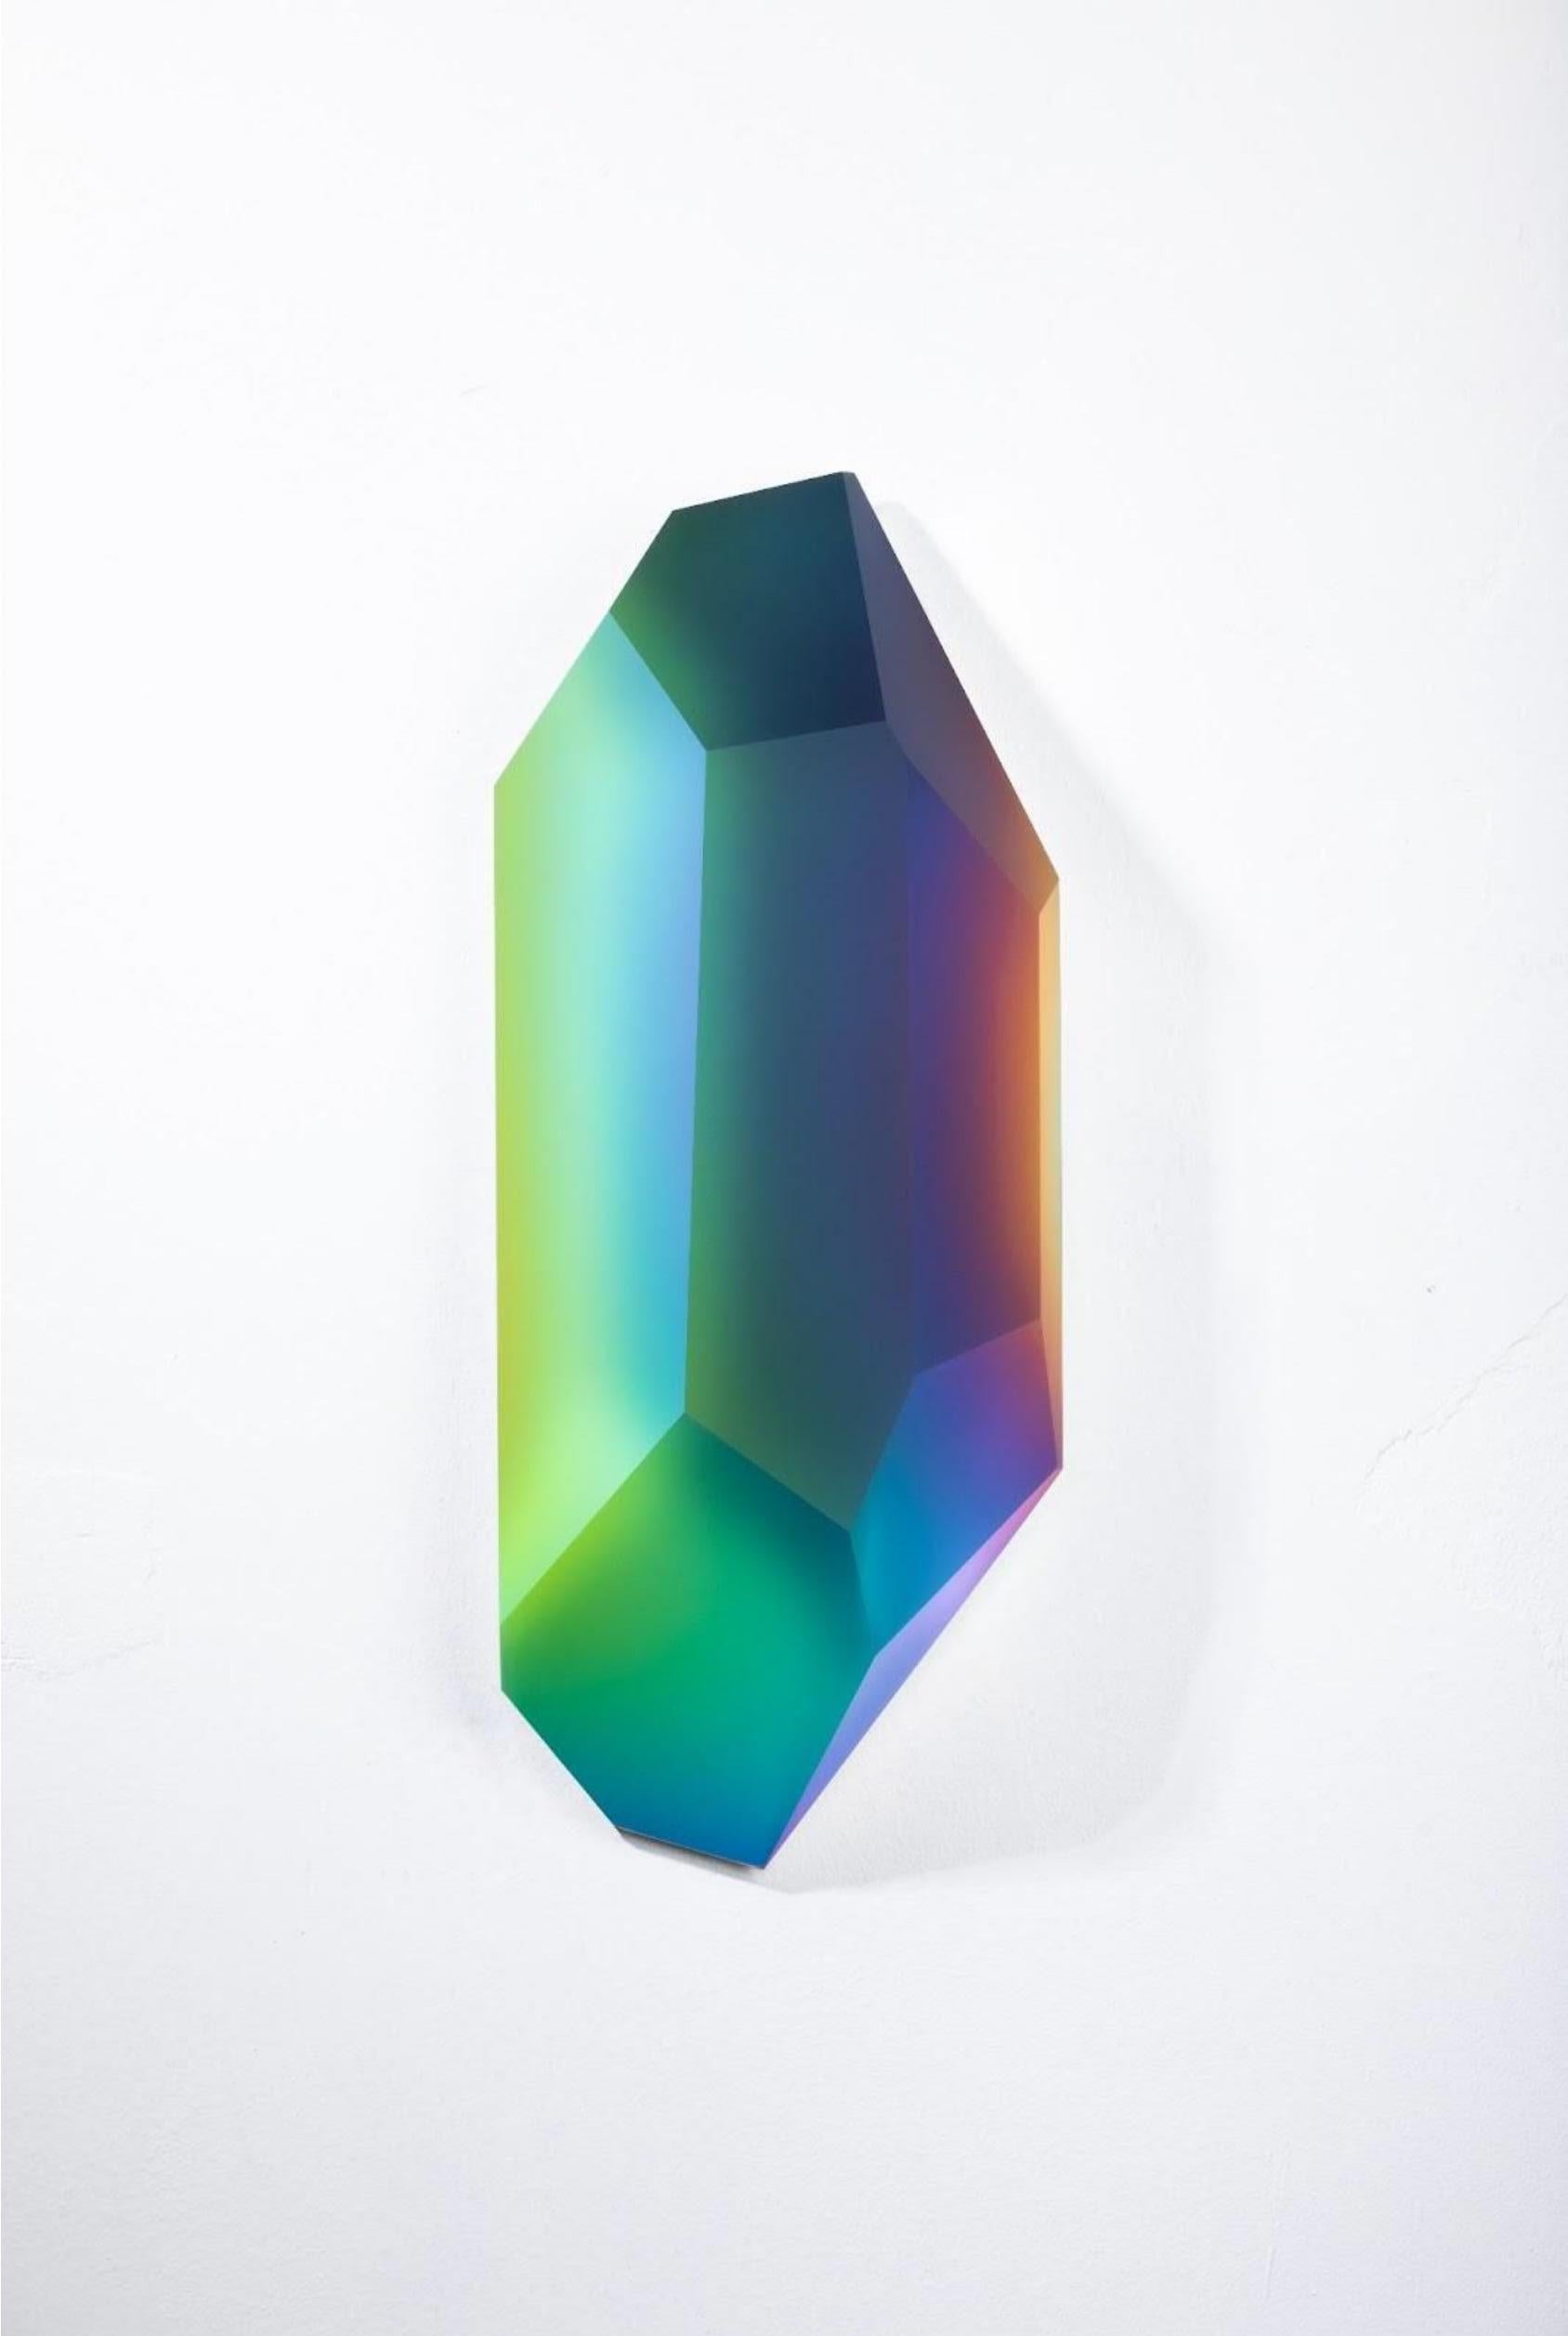 Pretty Mirage 0905 von Lukas Novak
Abmessungen: B 12 x T 23 x H 54 cm
MATERIALIEN: Geschliffenes Glas, Kristall, Farbverlauf

Die Pretty Mirage Serie ist aus Wandkristallen gefertigt. Es ist eine einzigartige Komposition aus Glasschliffen und einem